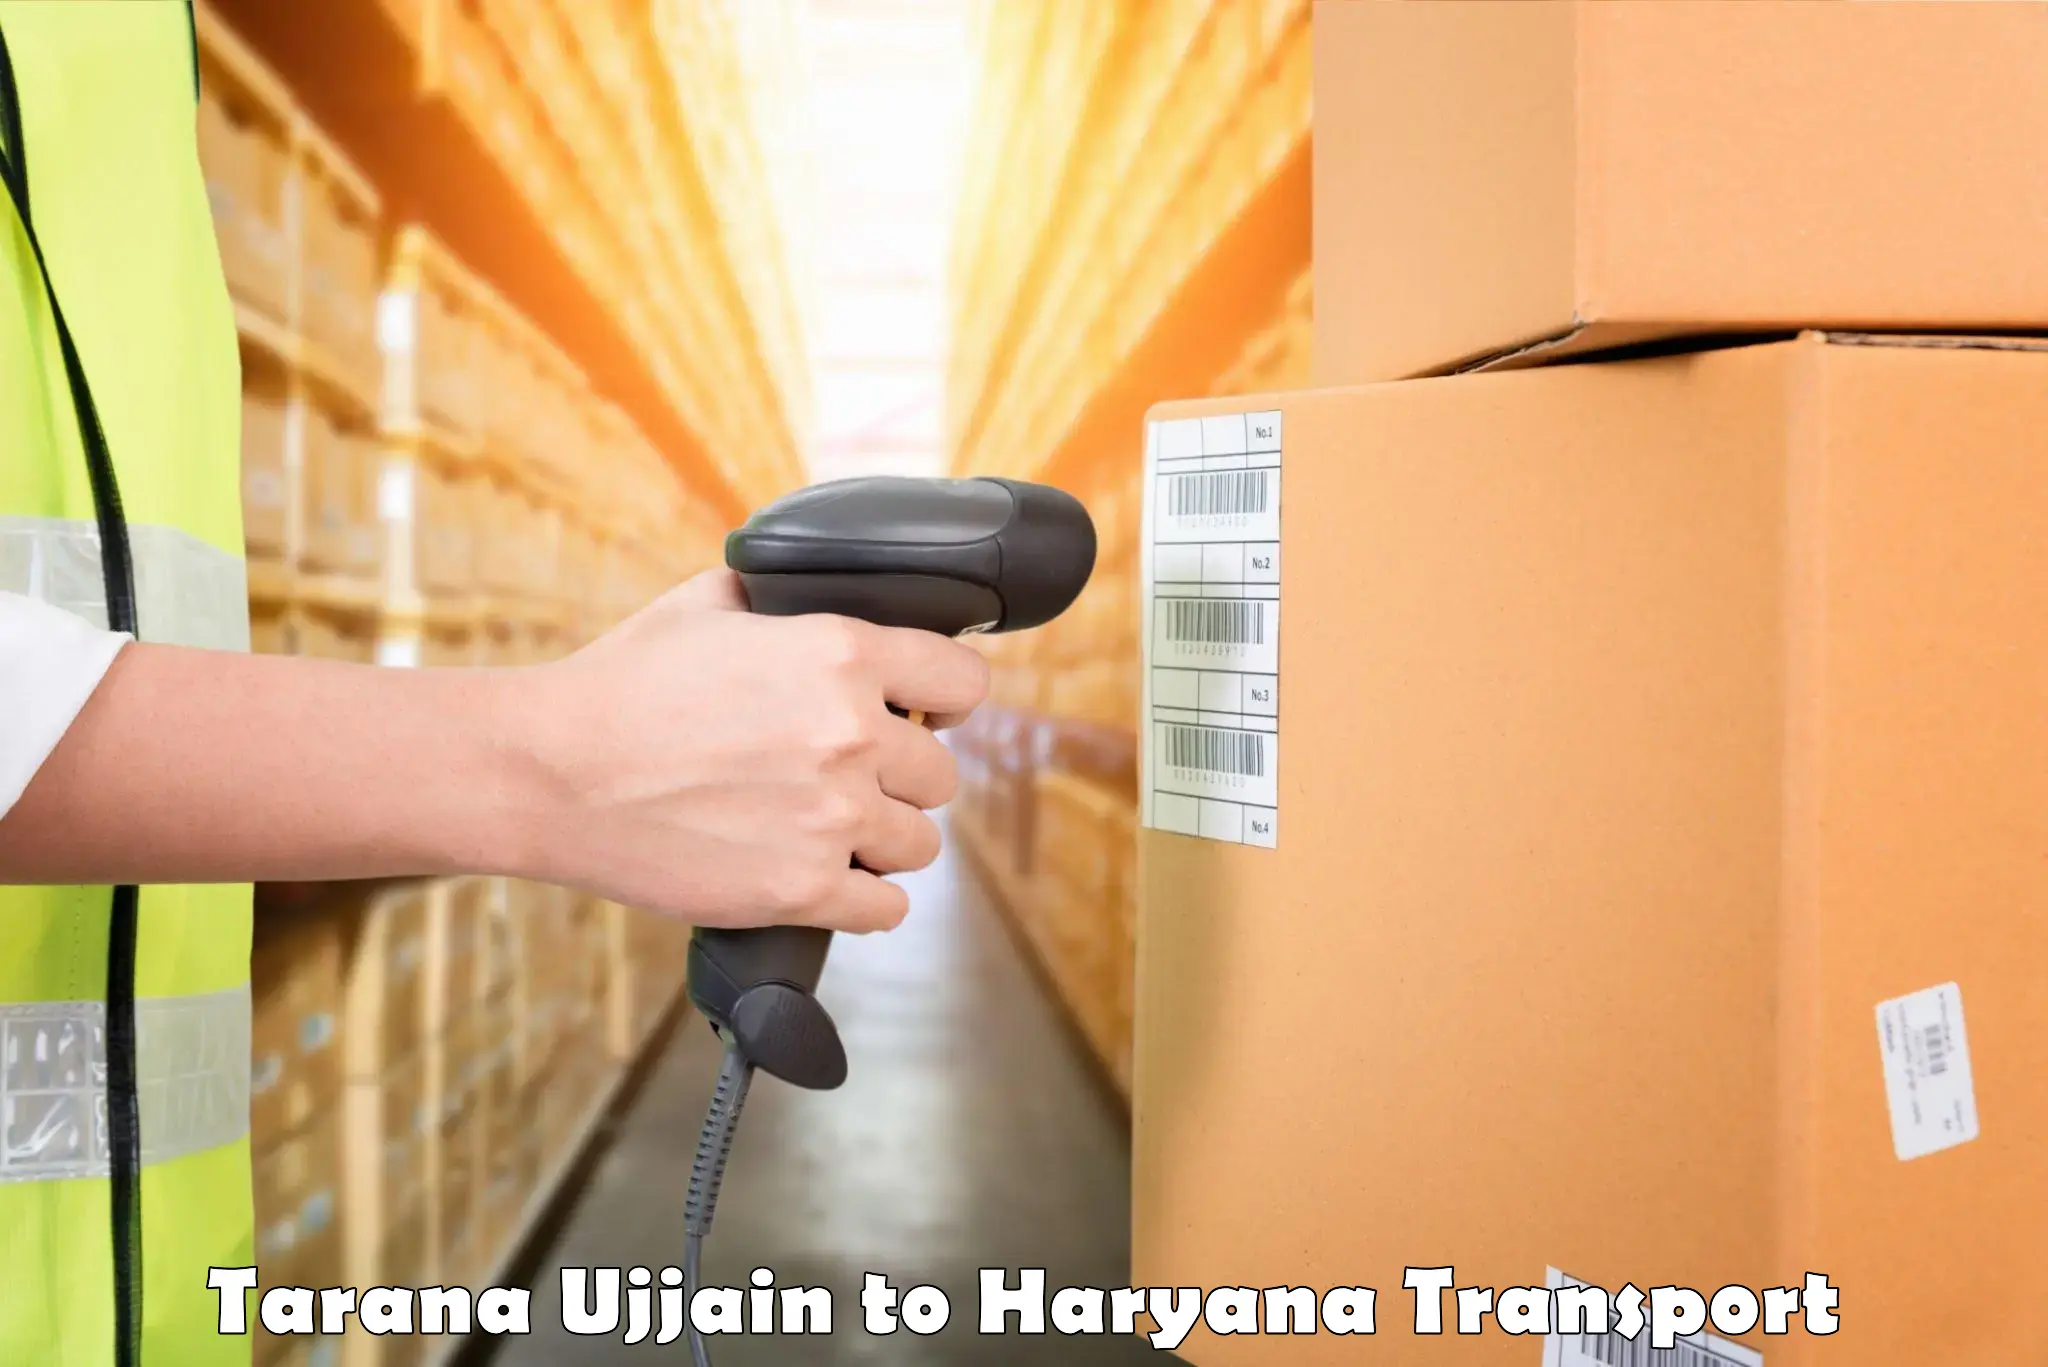 Delivery service Tarana Ujjain to Pinjore